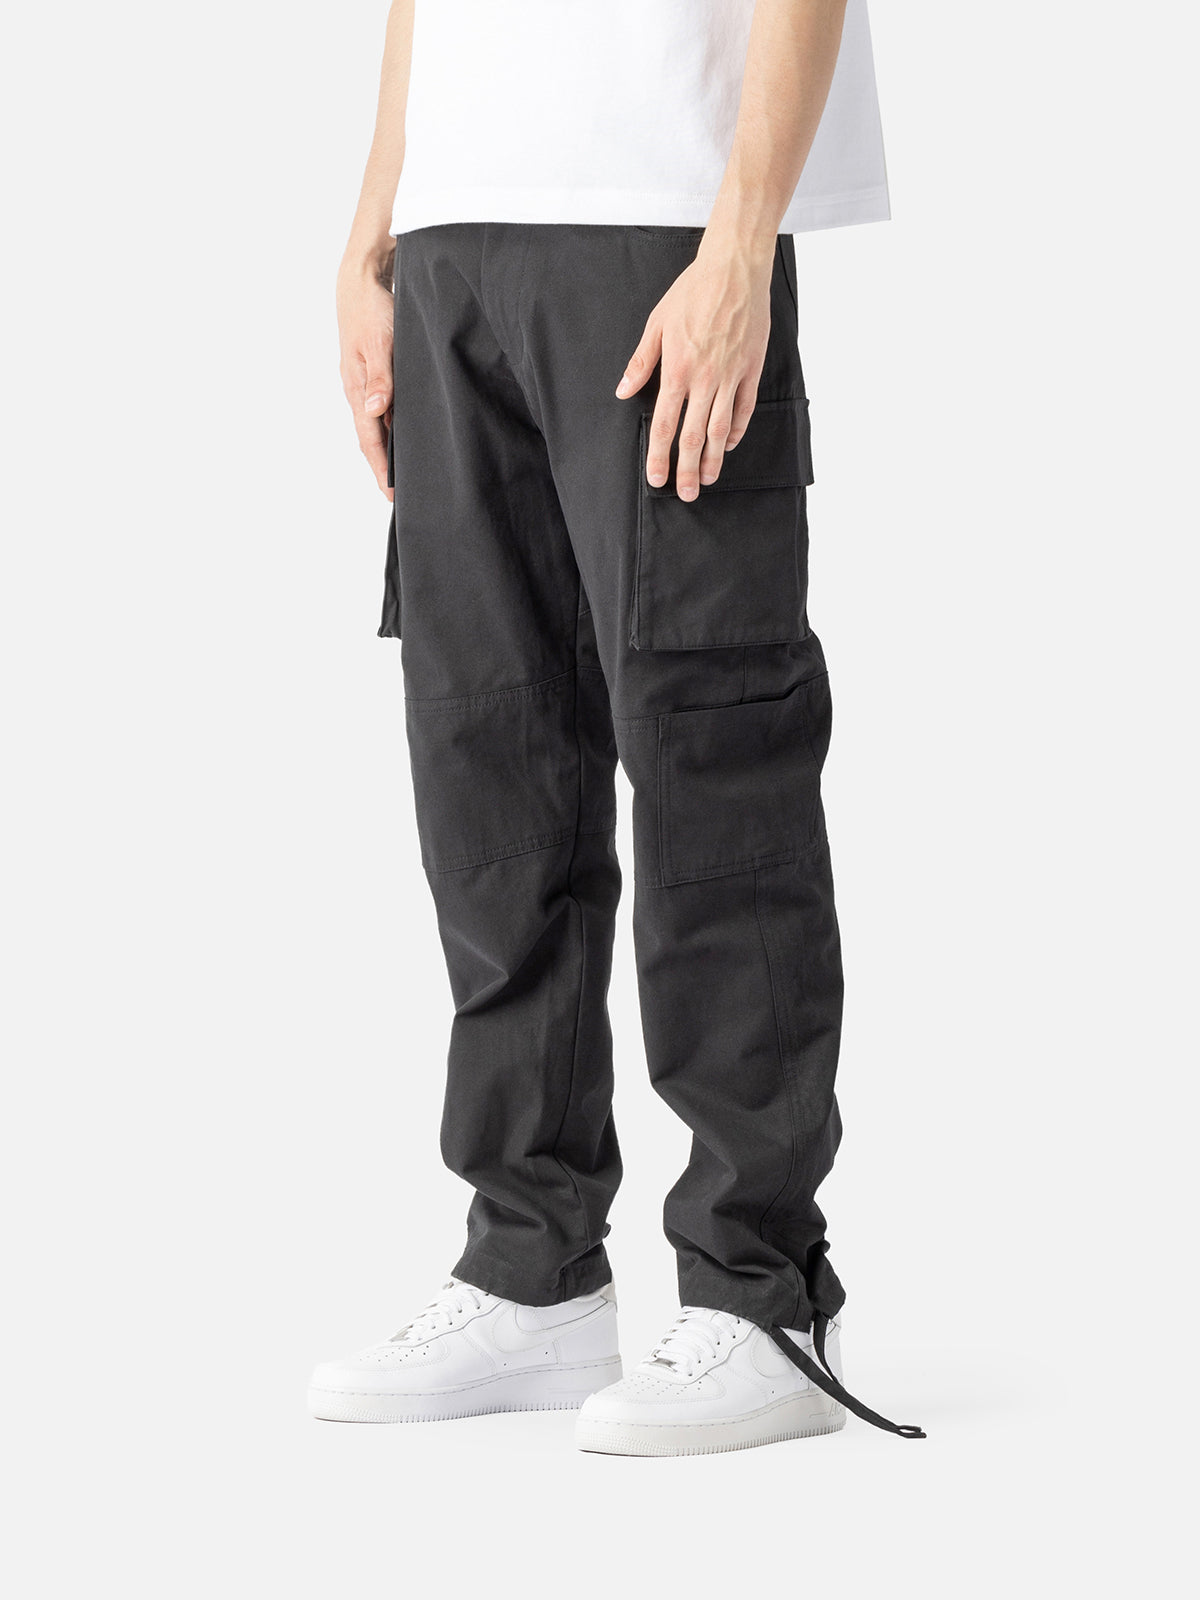 Cargo Jeans V1 in Black - ShopperBoard